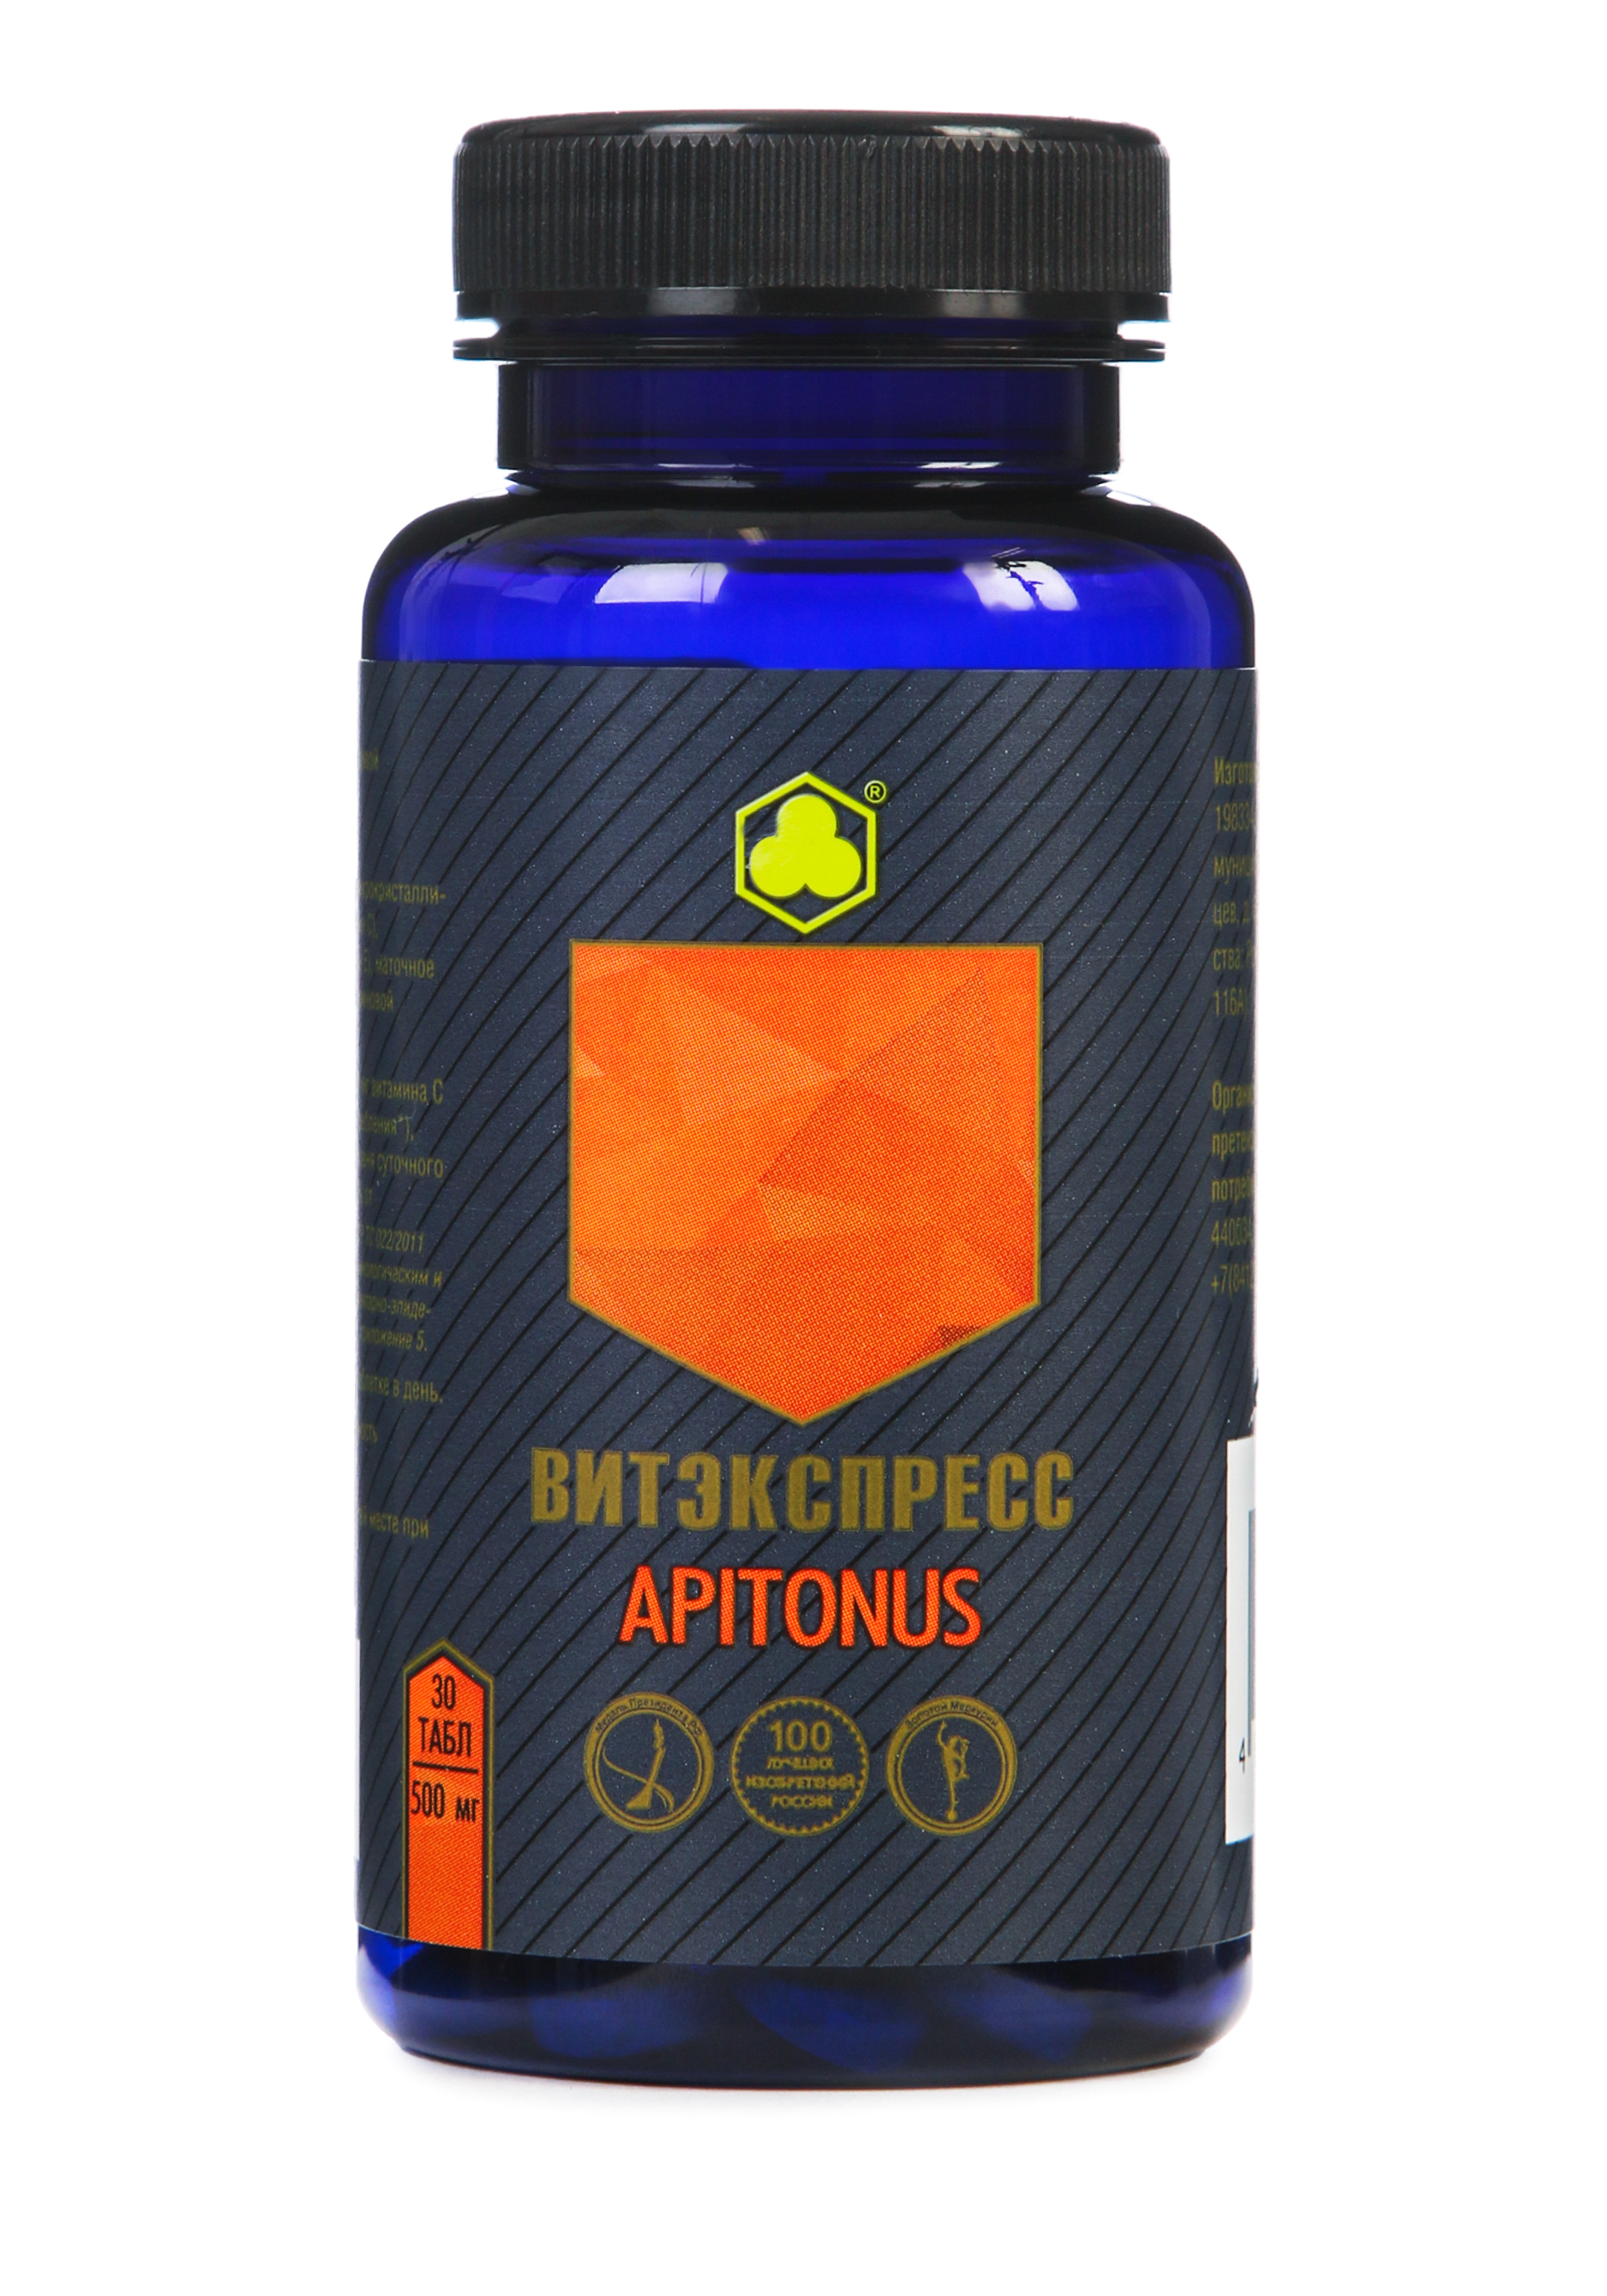 Органик-комплекс Apitonus витаминный комплекс